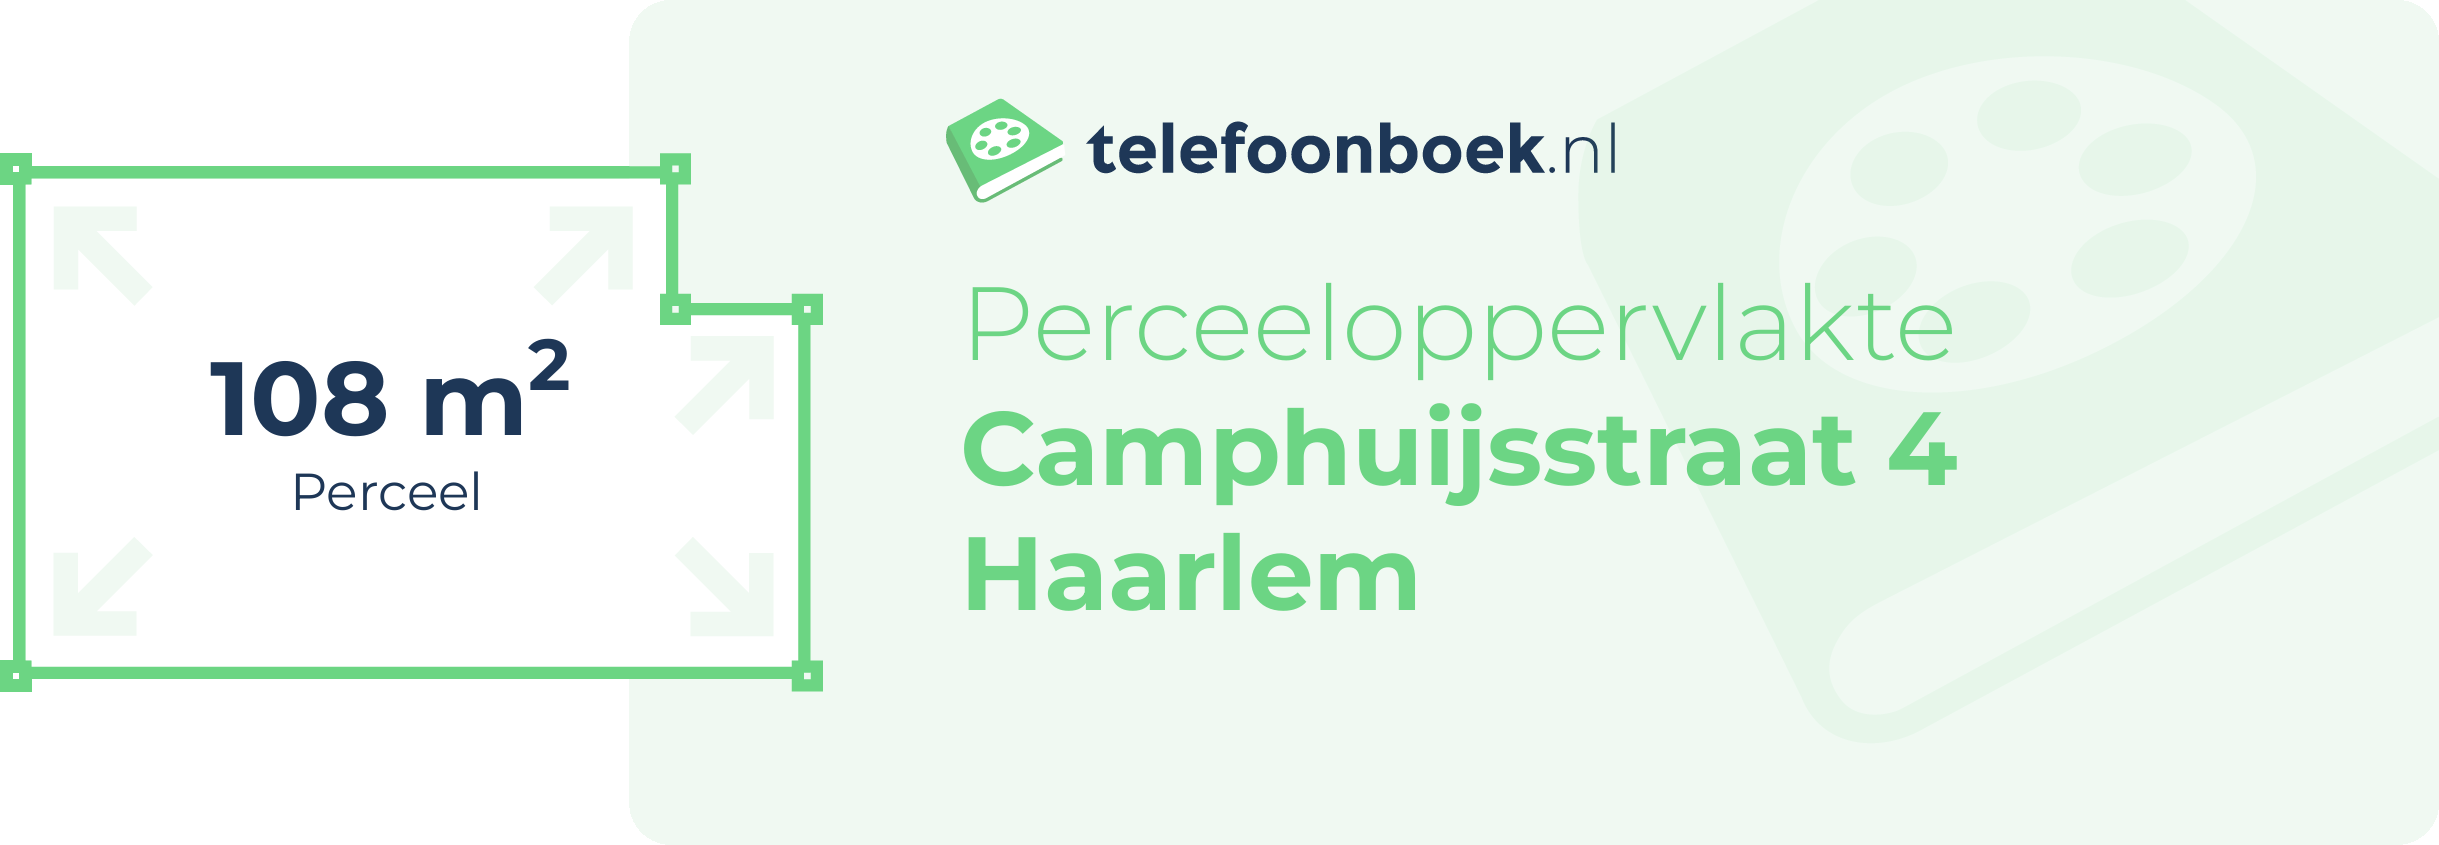 Perceeloppervlakte Camphuijsstraat 4 Haarlem